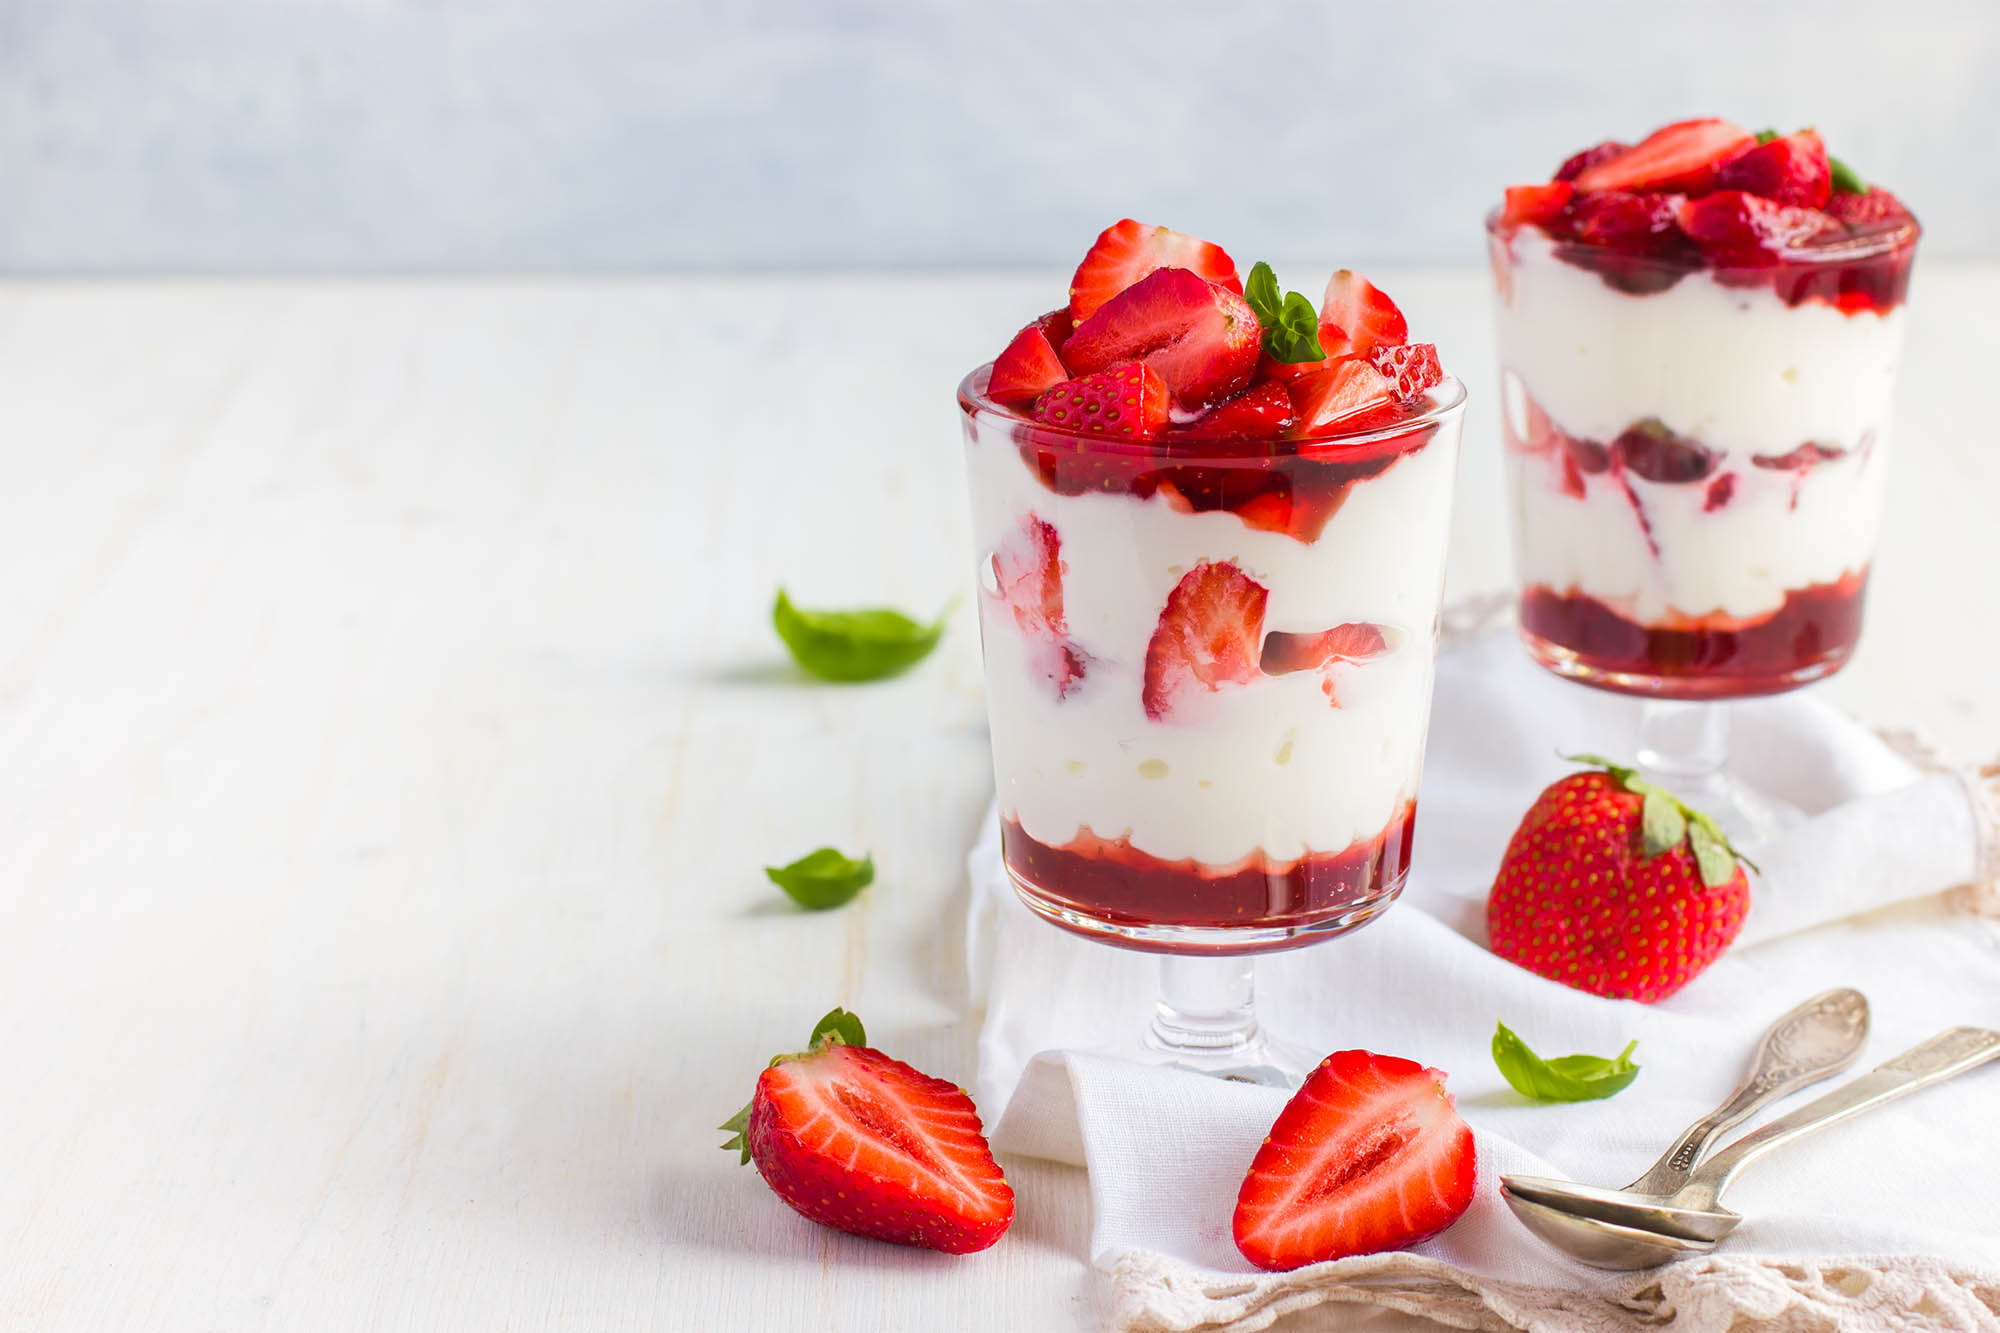 Postres saludables: frutos rojos con yogurt